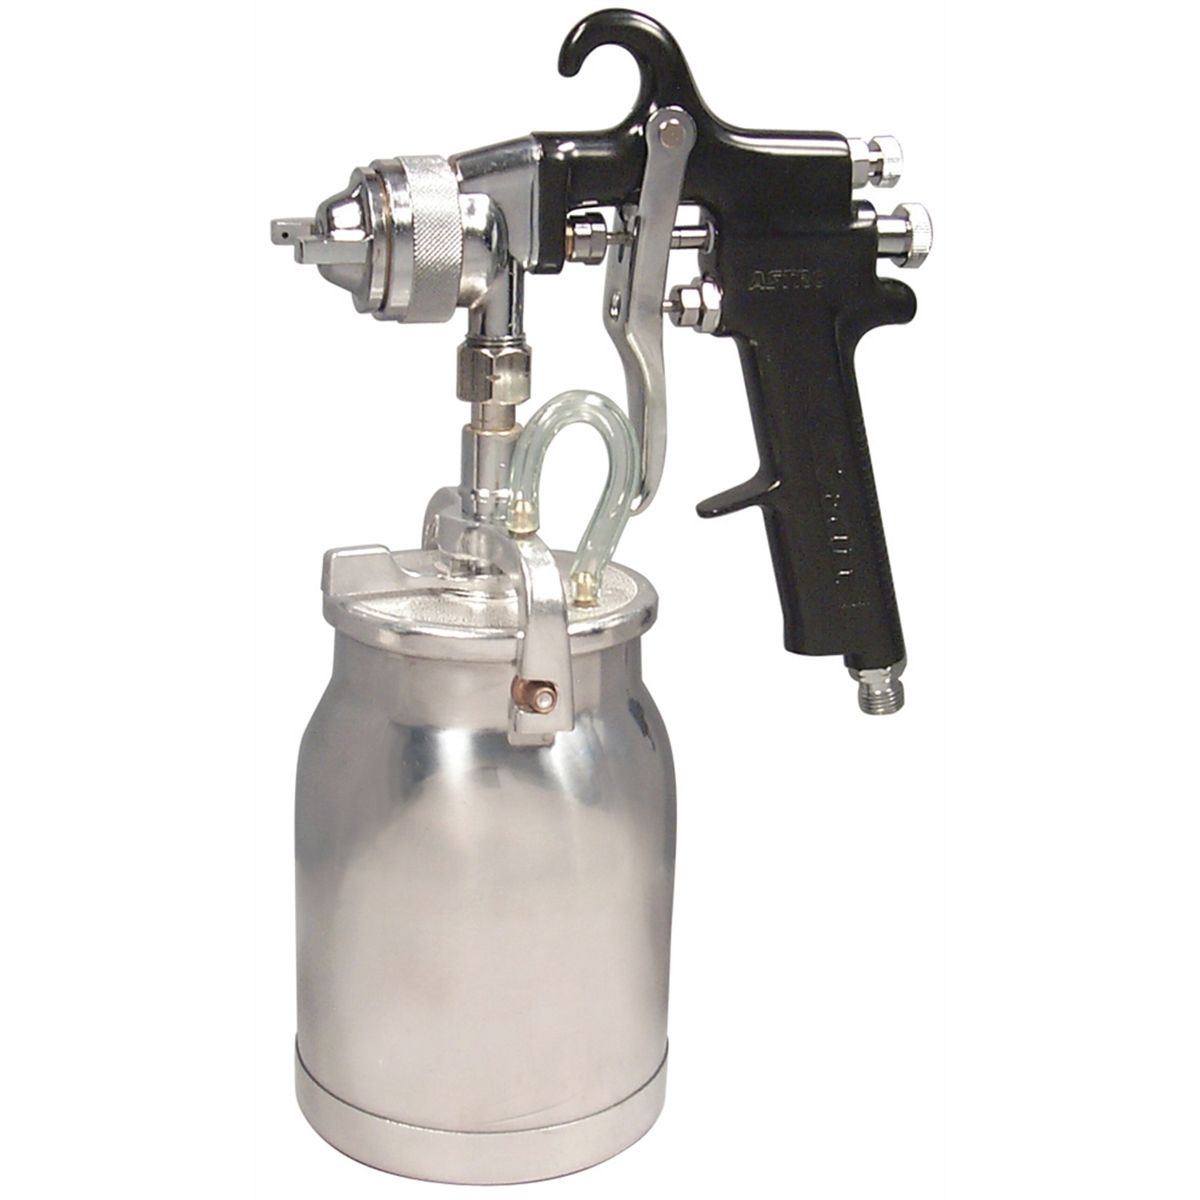 Spray Gun with Cup - Black Handle - 1.8mm Nozzle